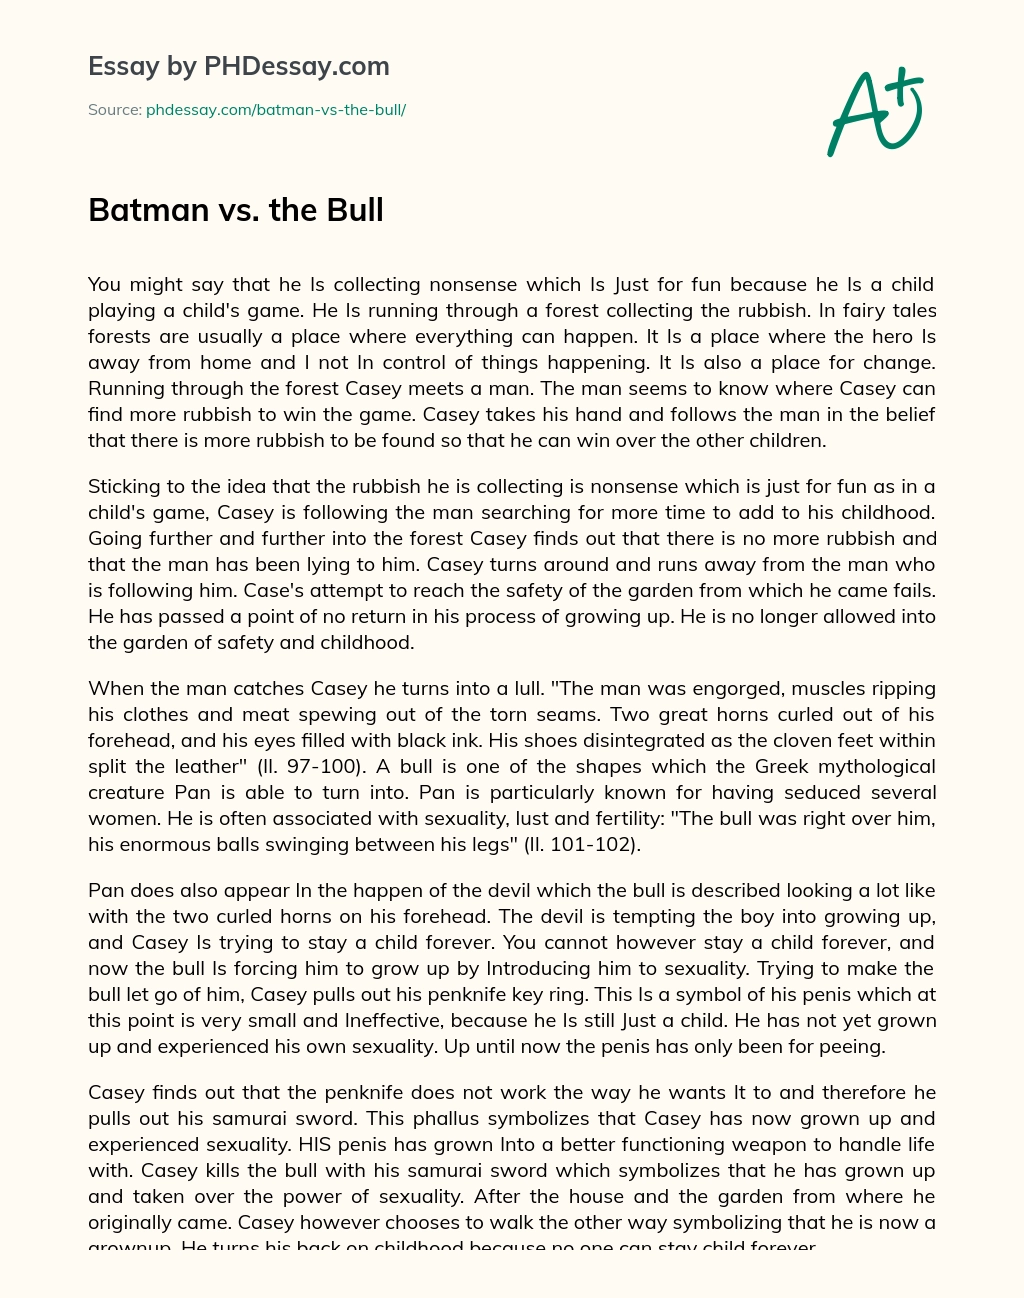 Batman vs. the Bull essay